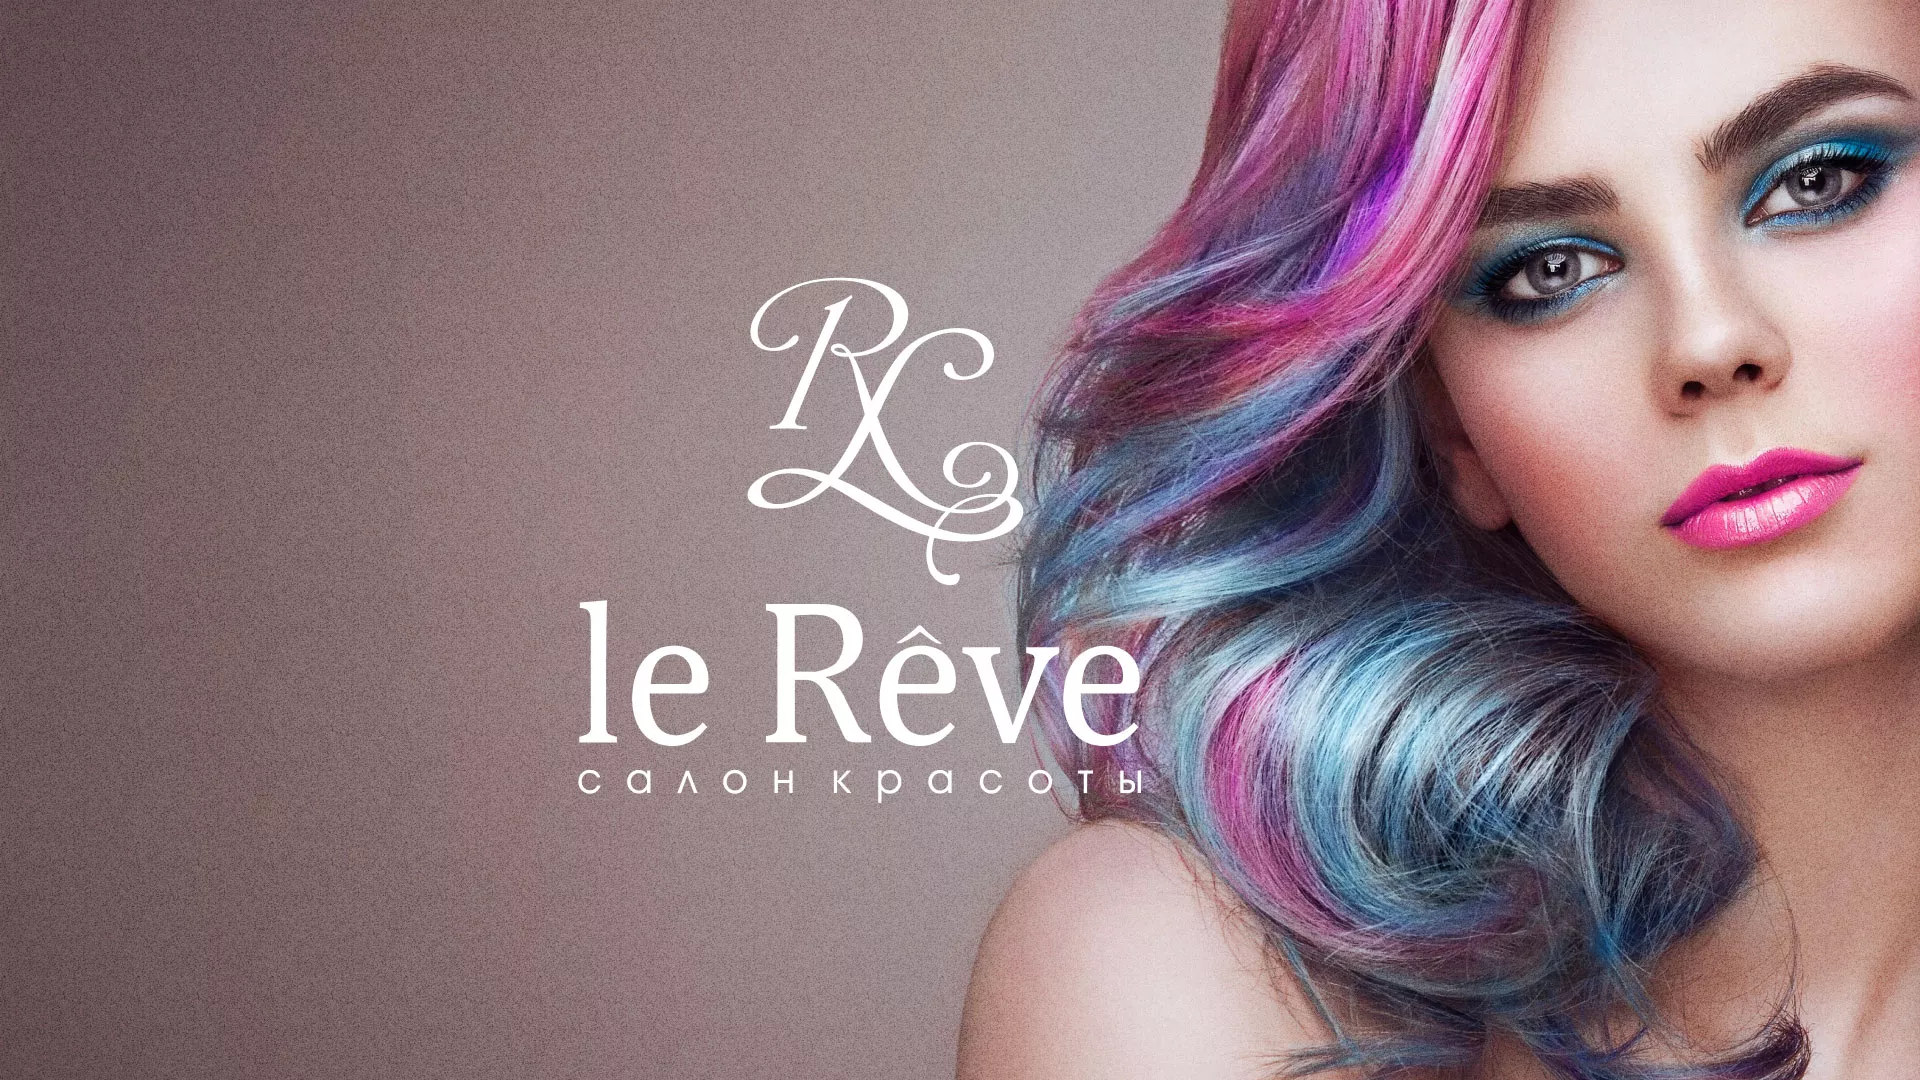 Создание сайта для салона красоты «Le Reve» в Лысково